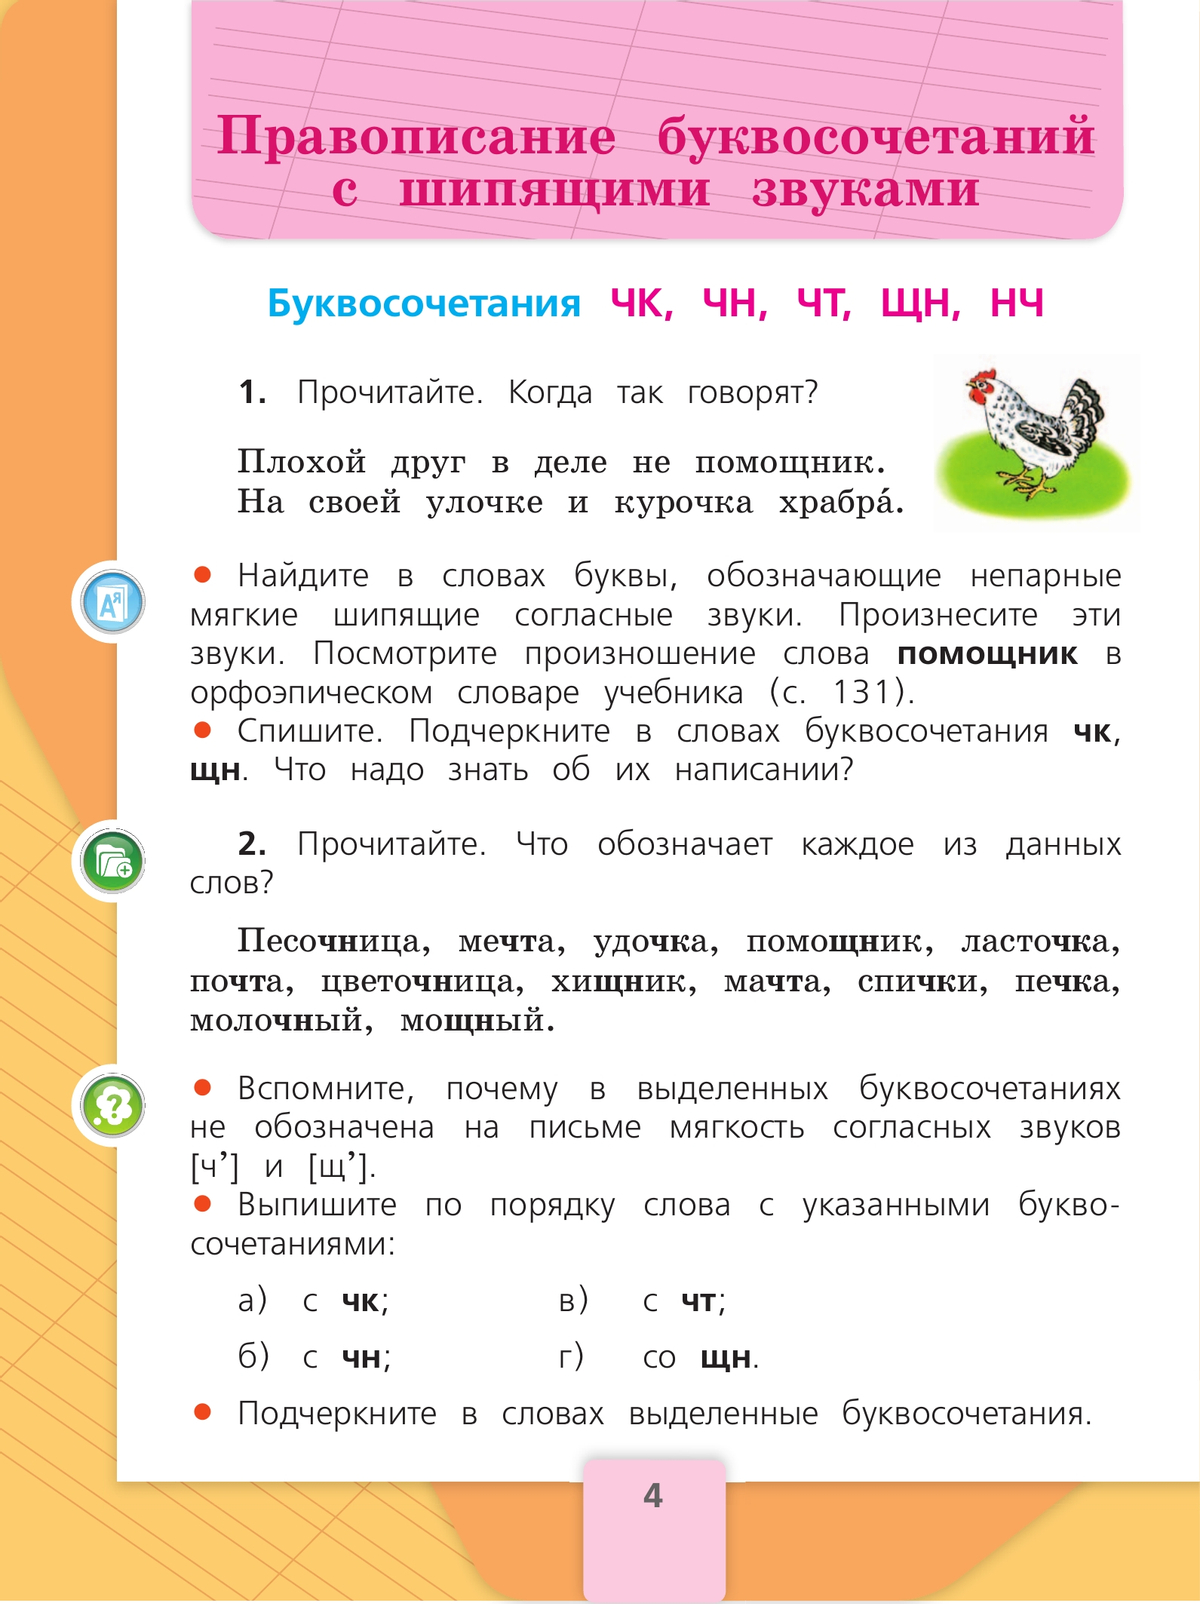 Русский язык. 2 класс. Учебник. В 2 ч. Часть 2 7